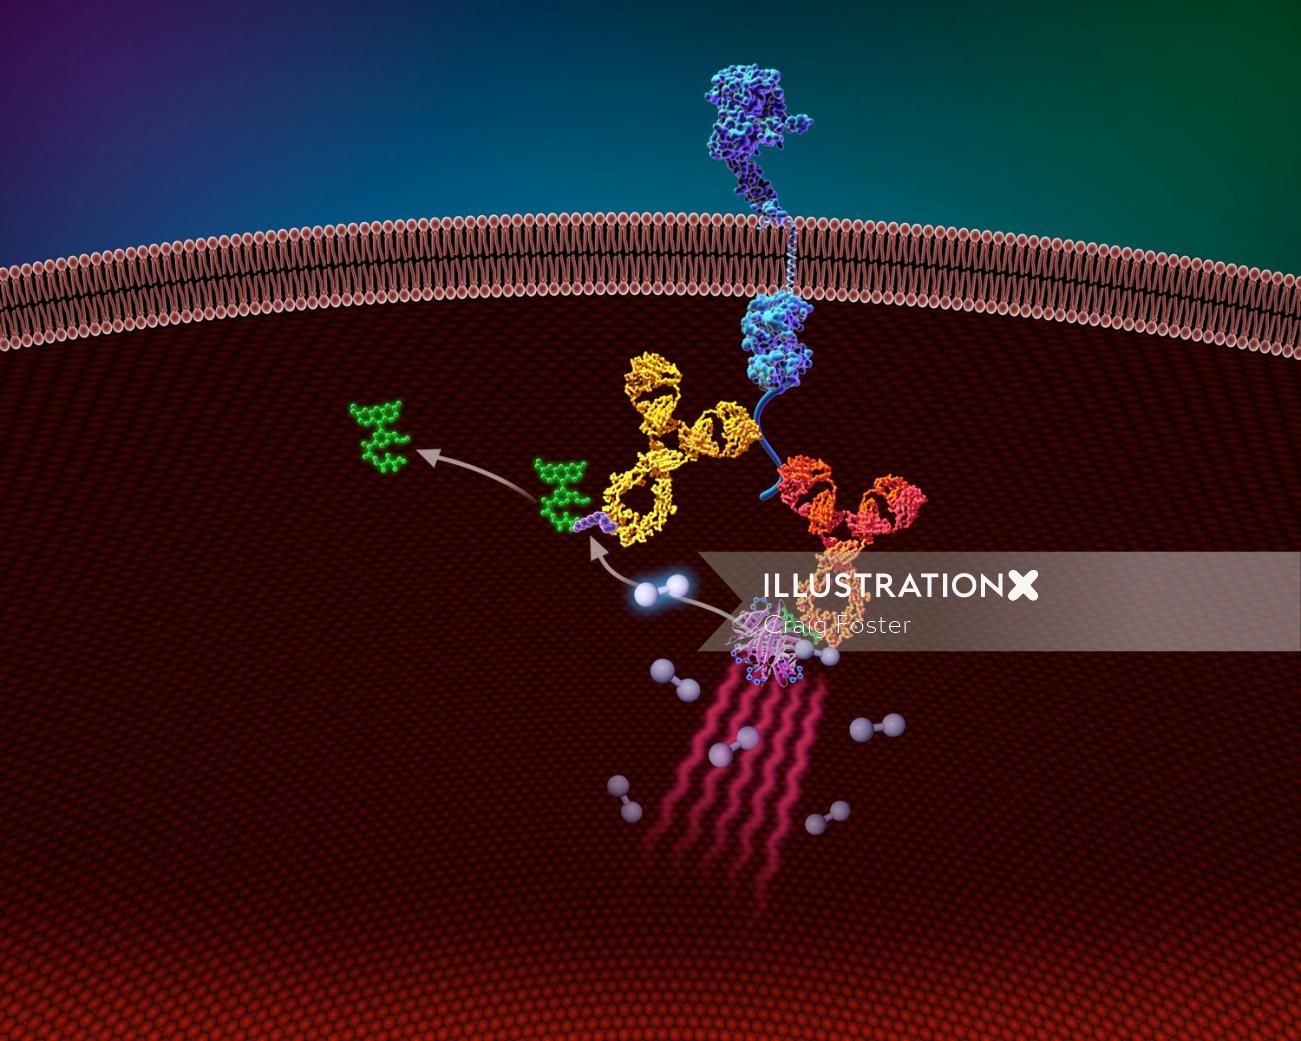 Uma ilustração do ensaio de proteínas